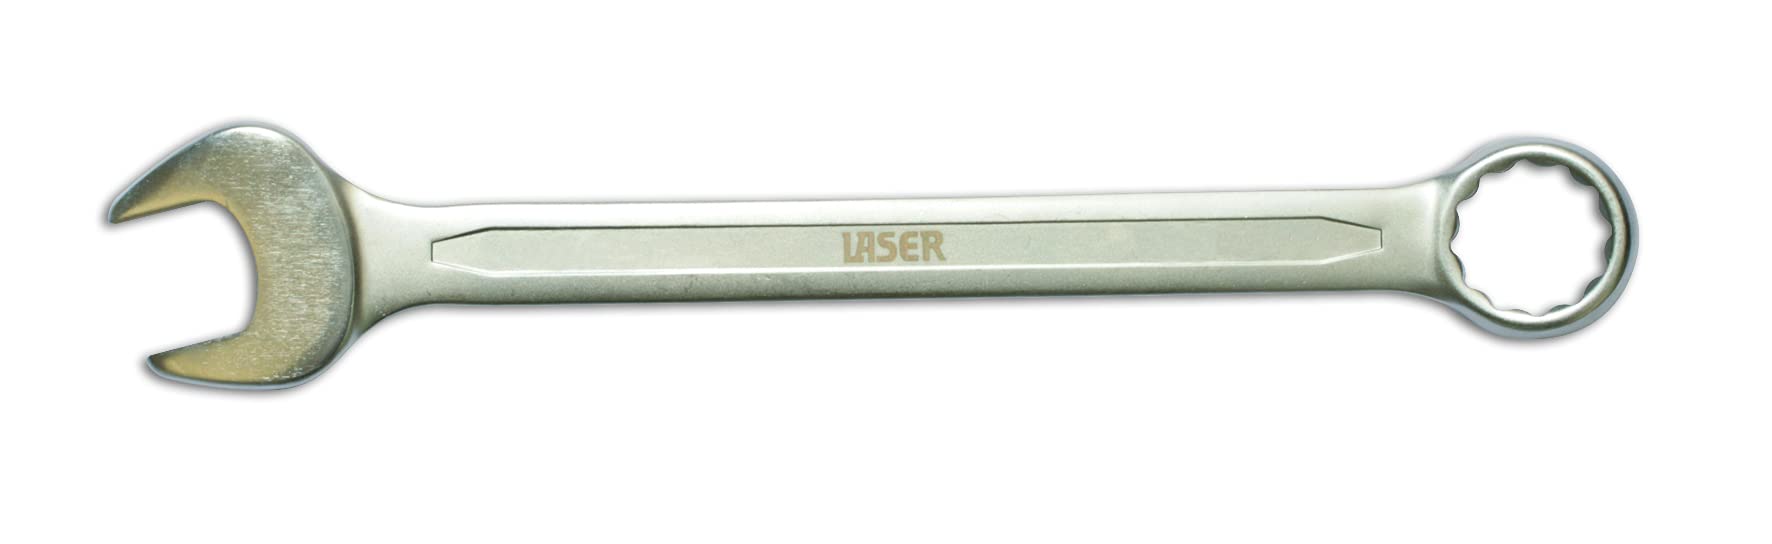 Laser 3073 Kombinationsschlüssel, 25 mm, Satin-Finish von Laser